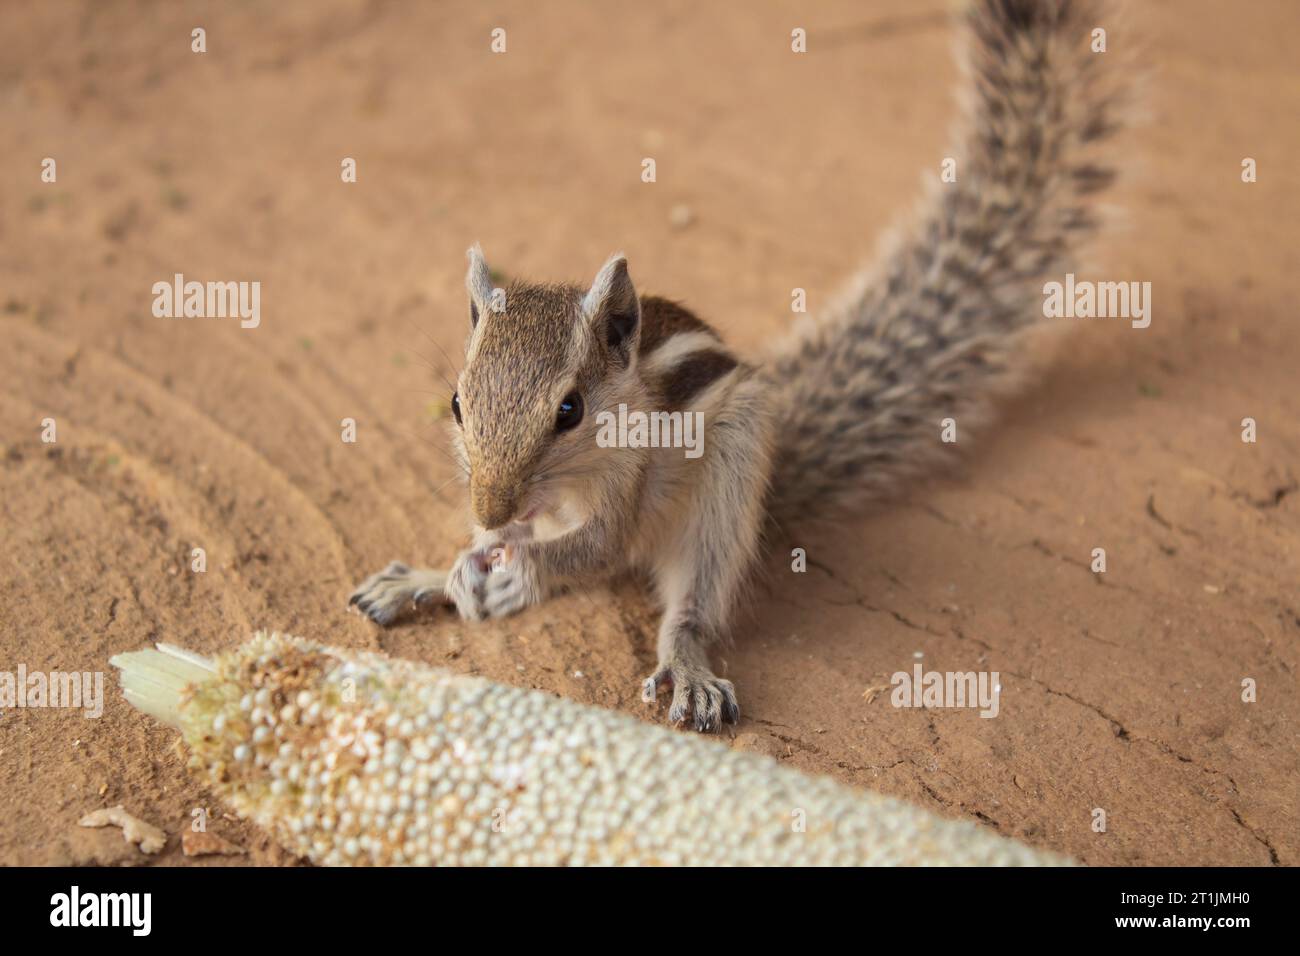 Écureuil mangeant du millet sur le sol dans le parc, Inde. Banque D'Images